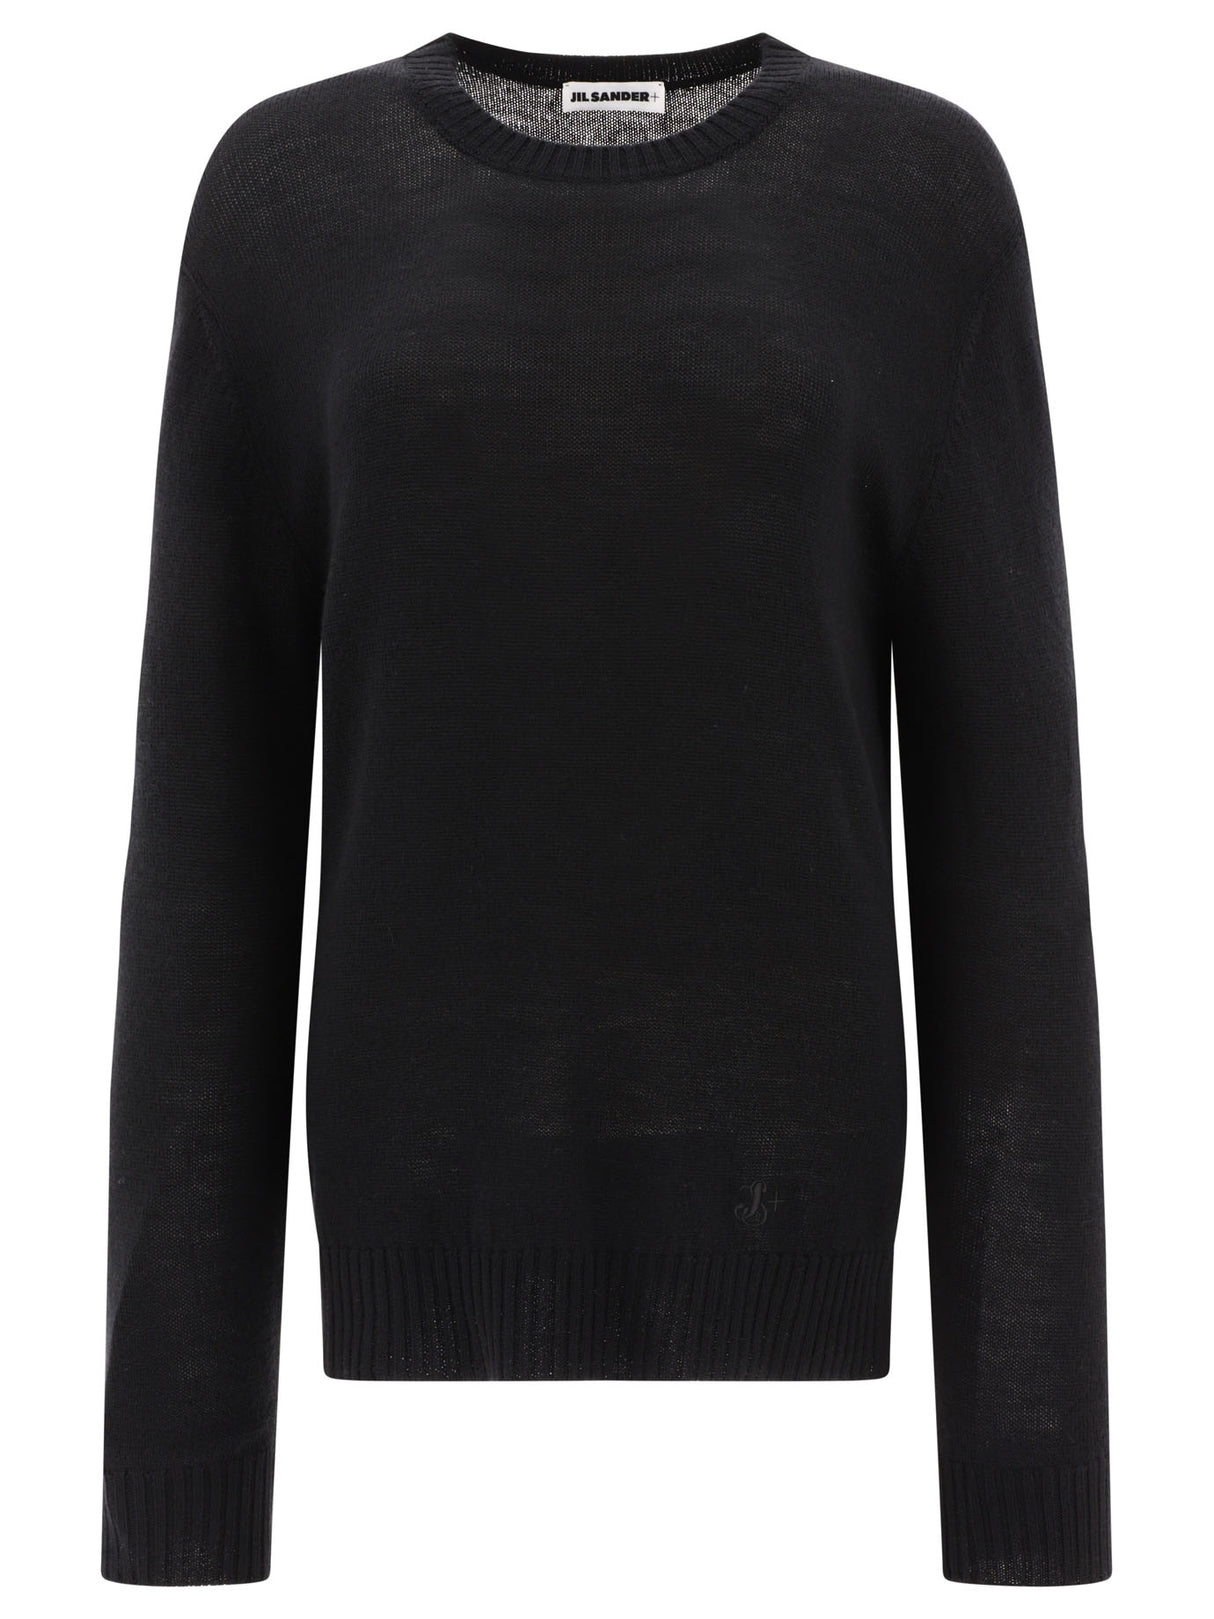 女性用ウルトラファインウールセーター - ブラック